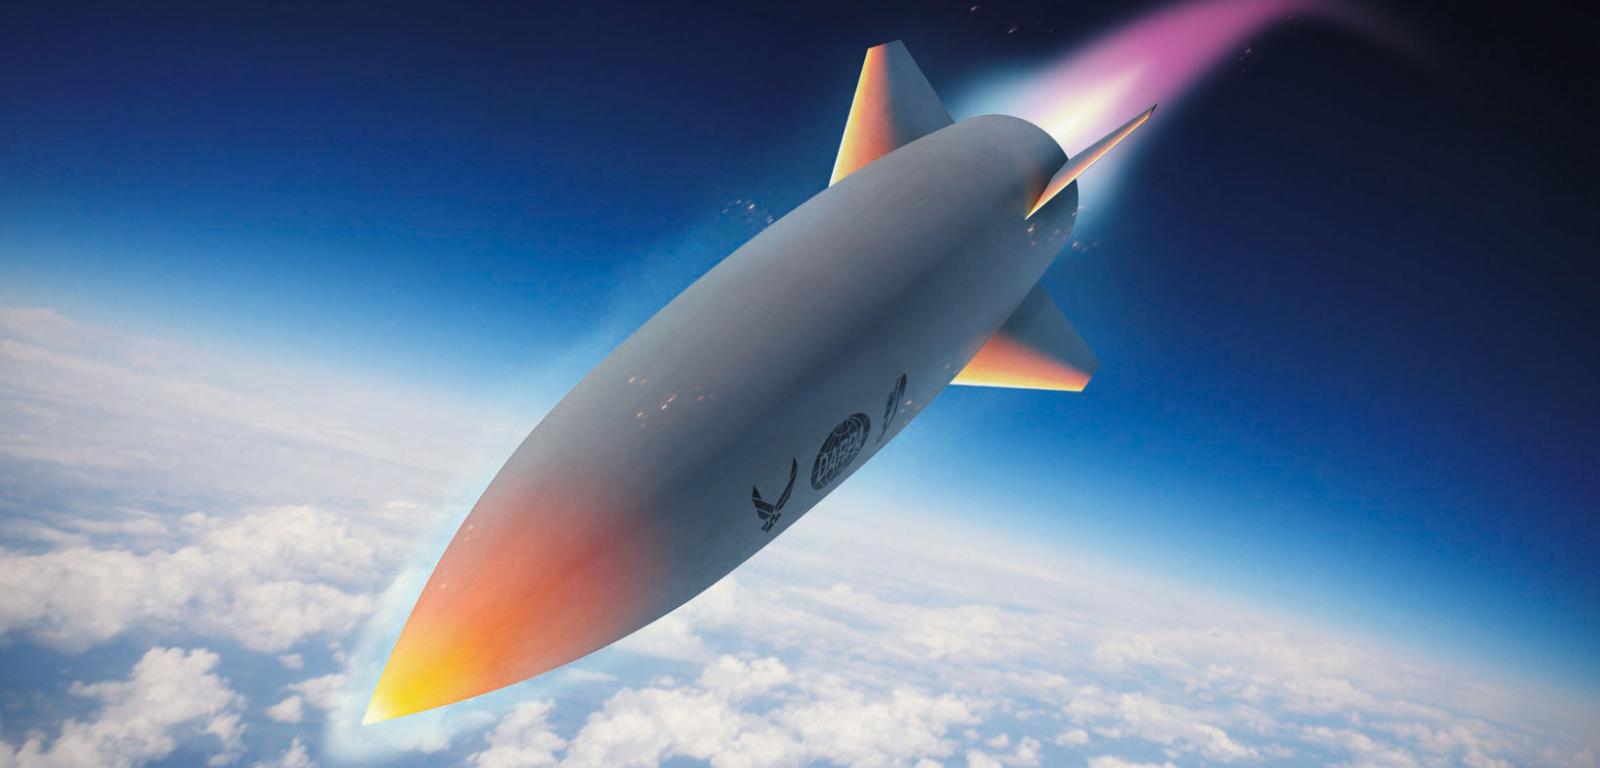 HAWC to jeden z projektów badawczych, prowadzonych obecnie przez Amerykanów – w styczniu 2023 r. rakieta osiągnęła prędkość 6100 km/h. Łącznie pokonała wówczas 560 km.